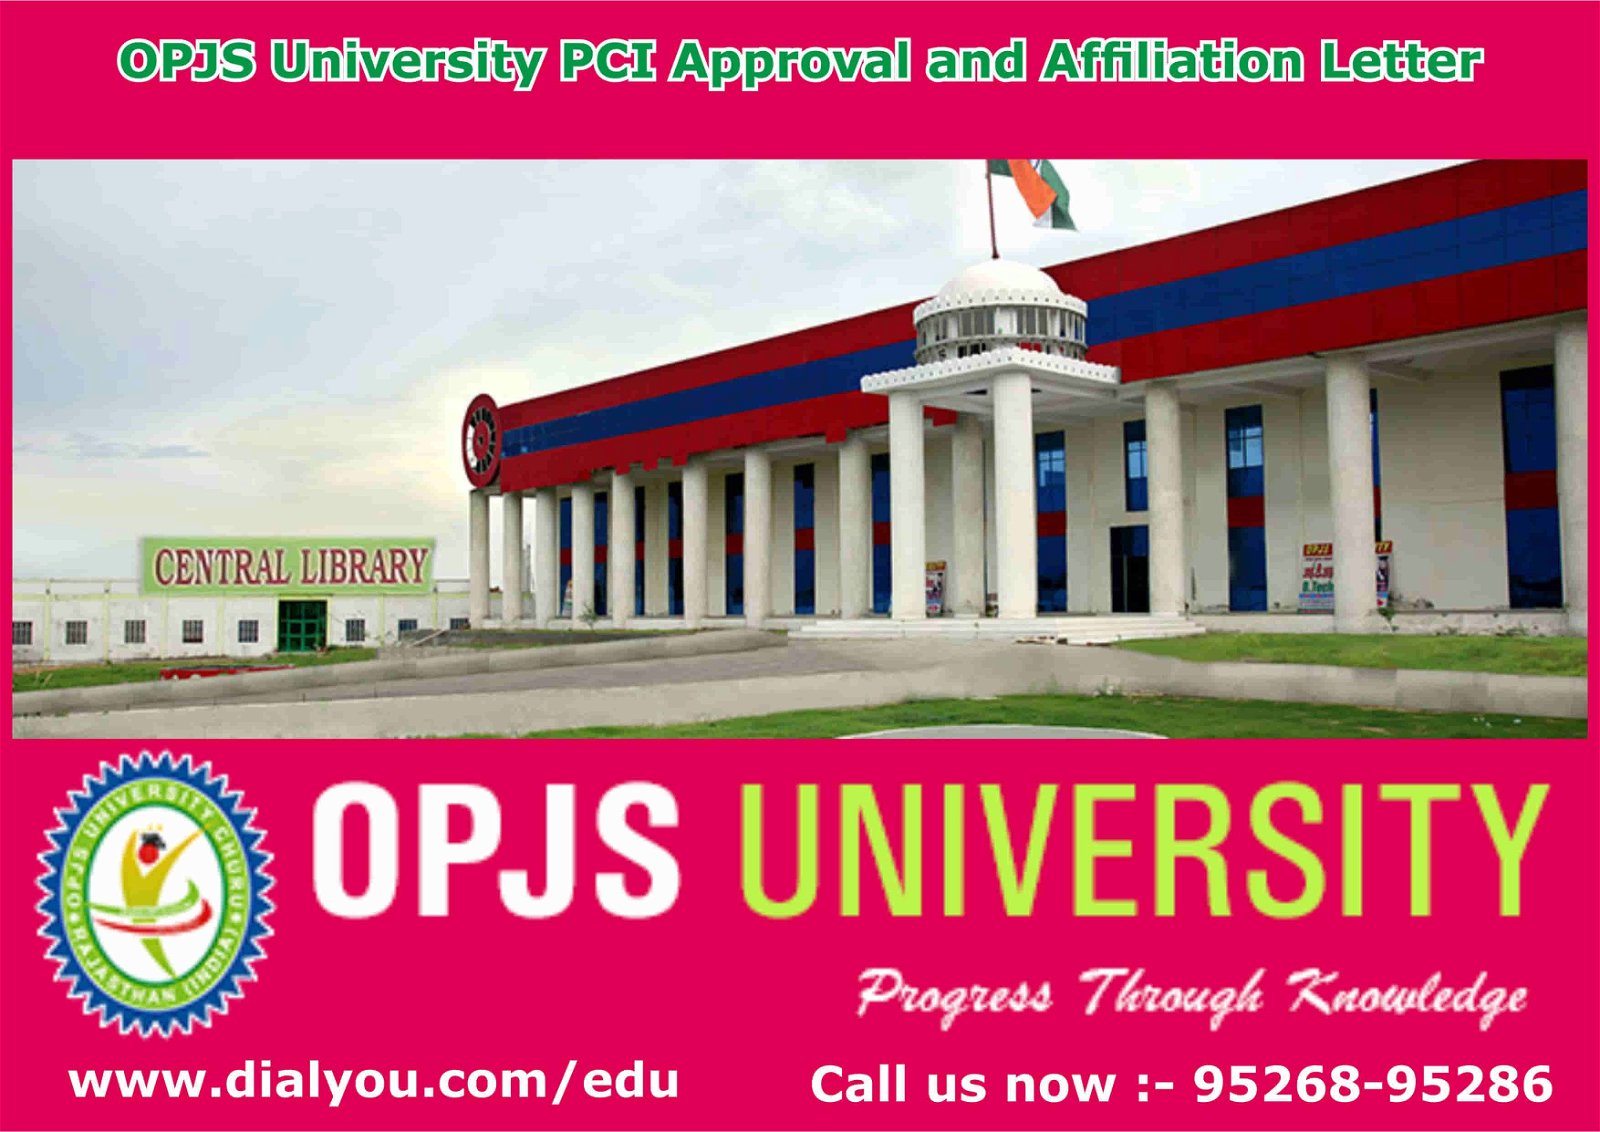 OPJS University Banner